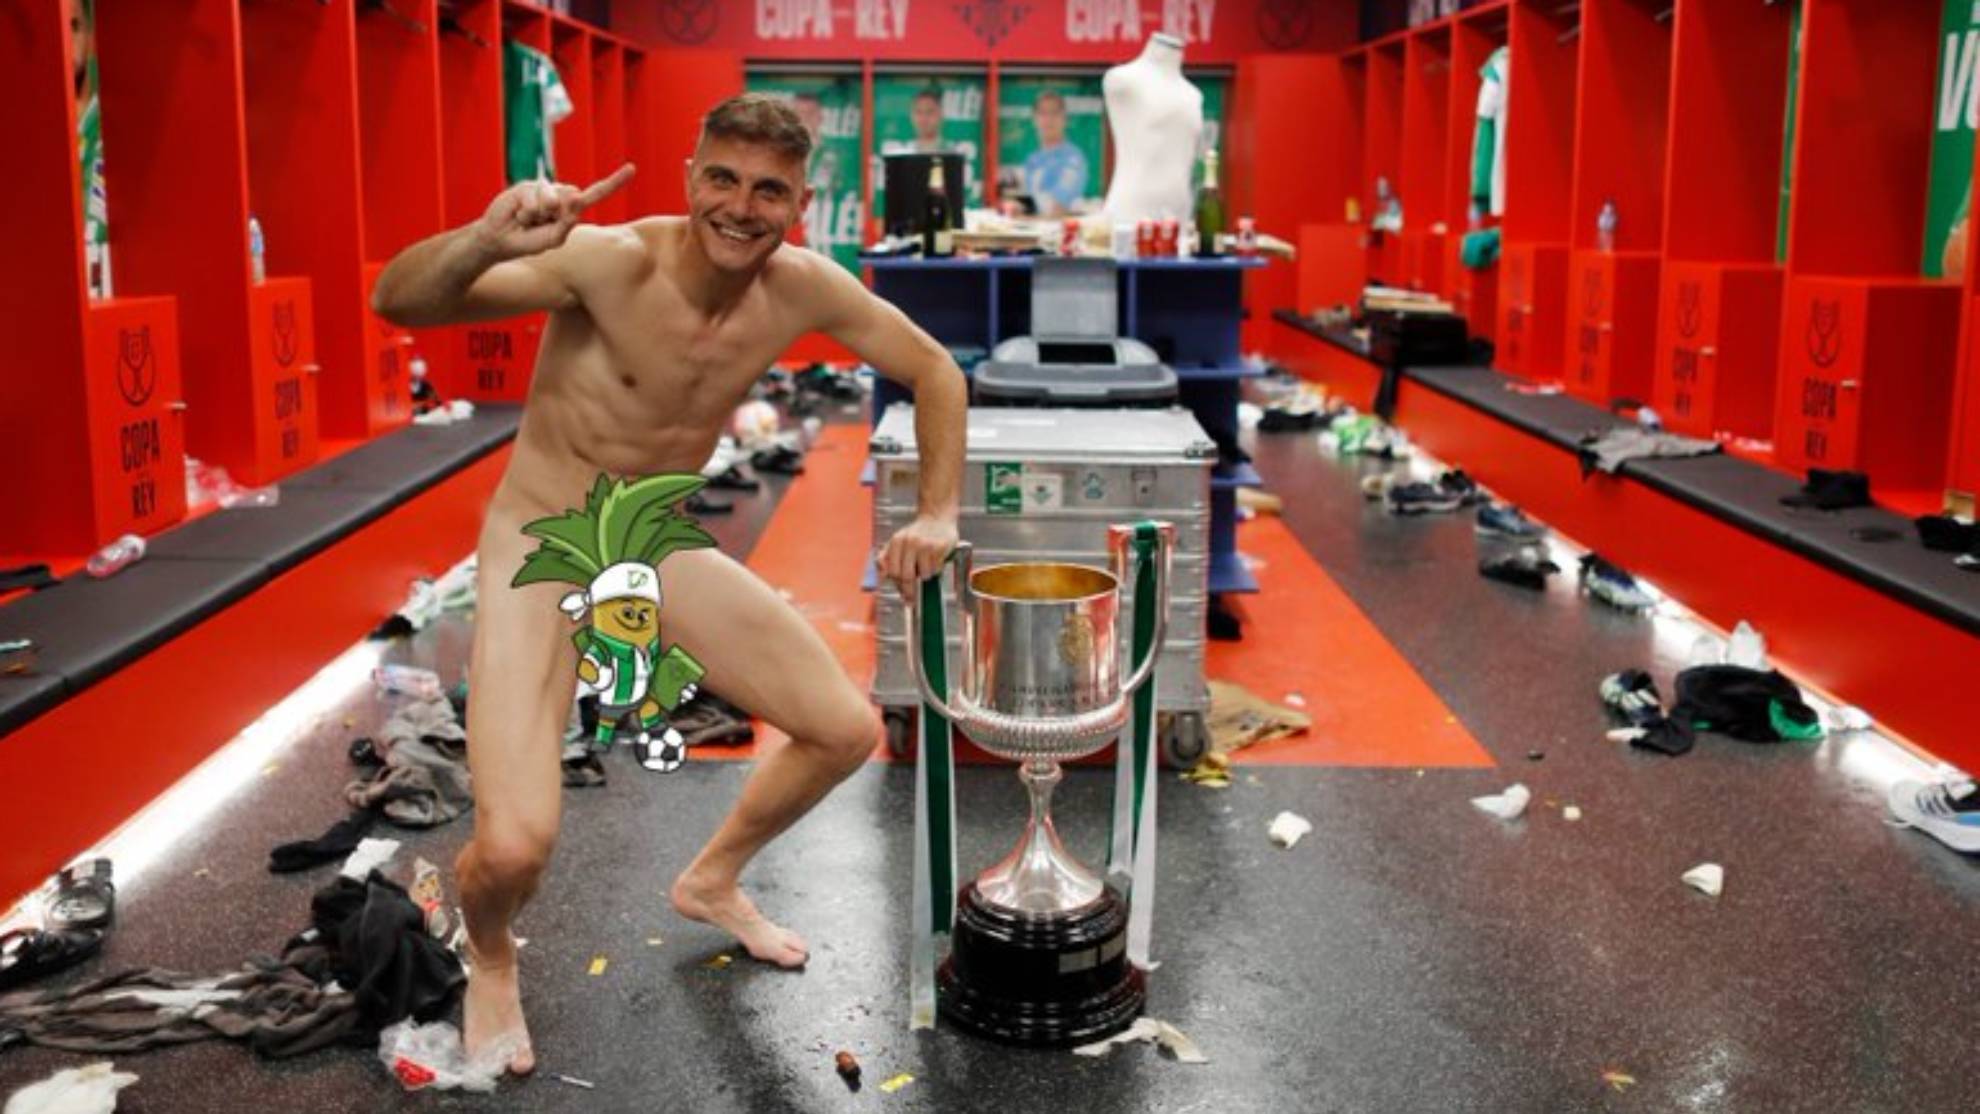 Lo que faltaba: ¡Joaquín vuelve a fotografiarse desnudo con la Copa del Rey!